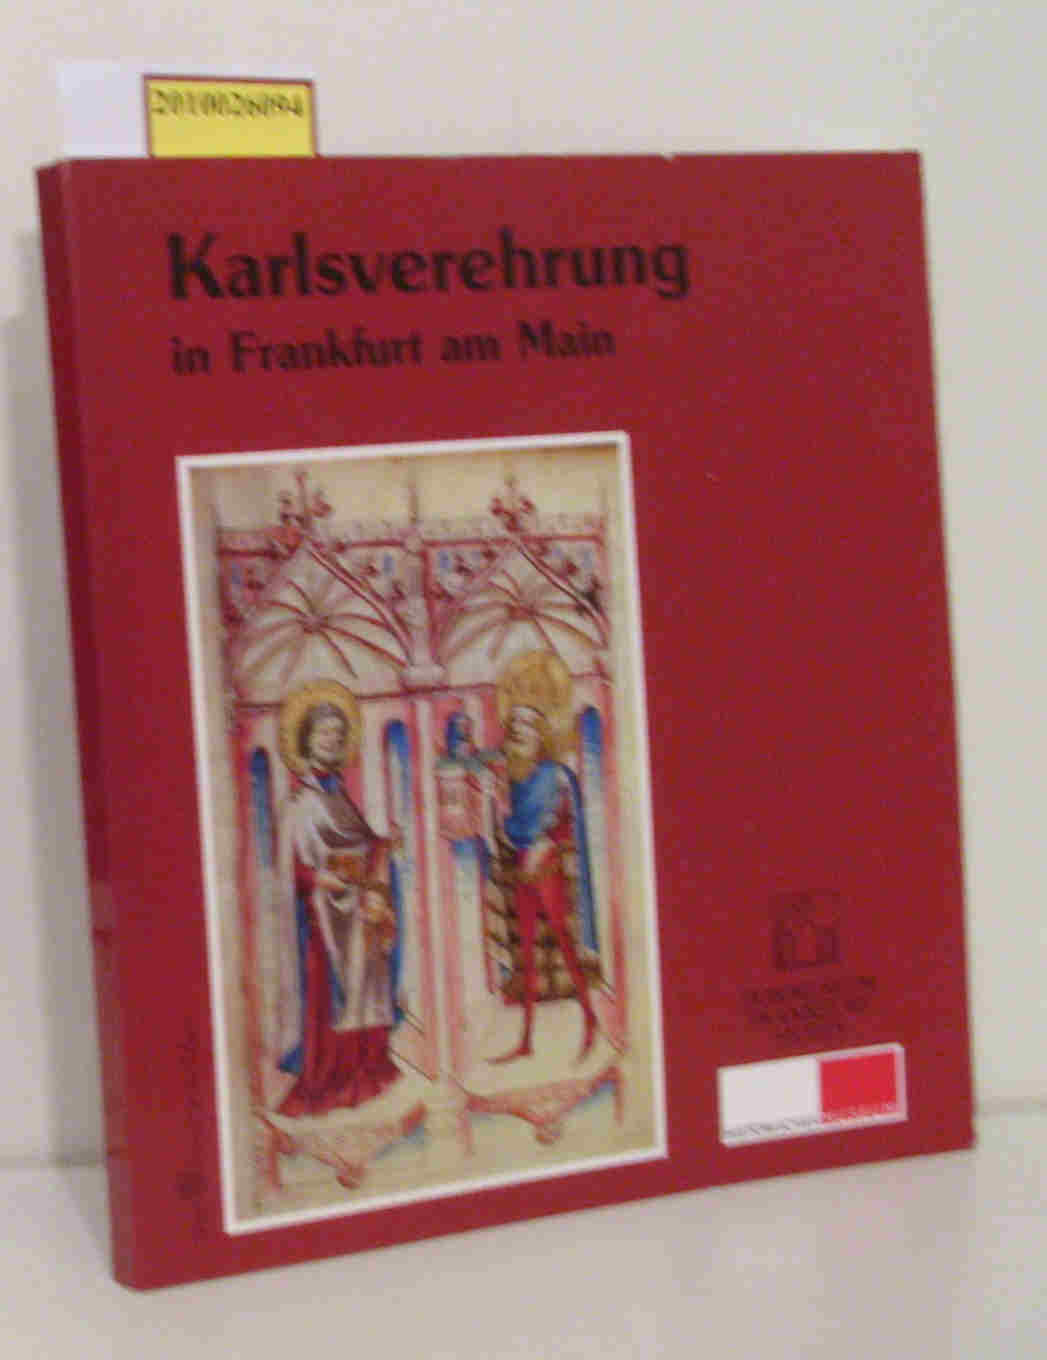 Karlsverehrung in Frankfurt am Main eine Ausstellung des Dommuseums Frankfurt und des Historischen Museums Frankfurt 13. 12. 2000 - 11. 2. 2001